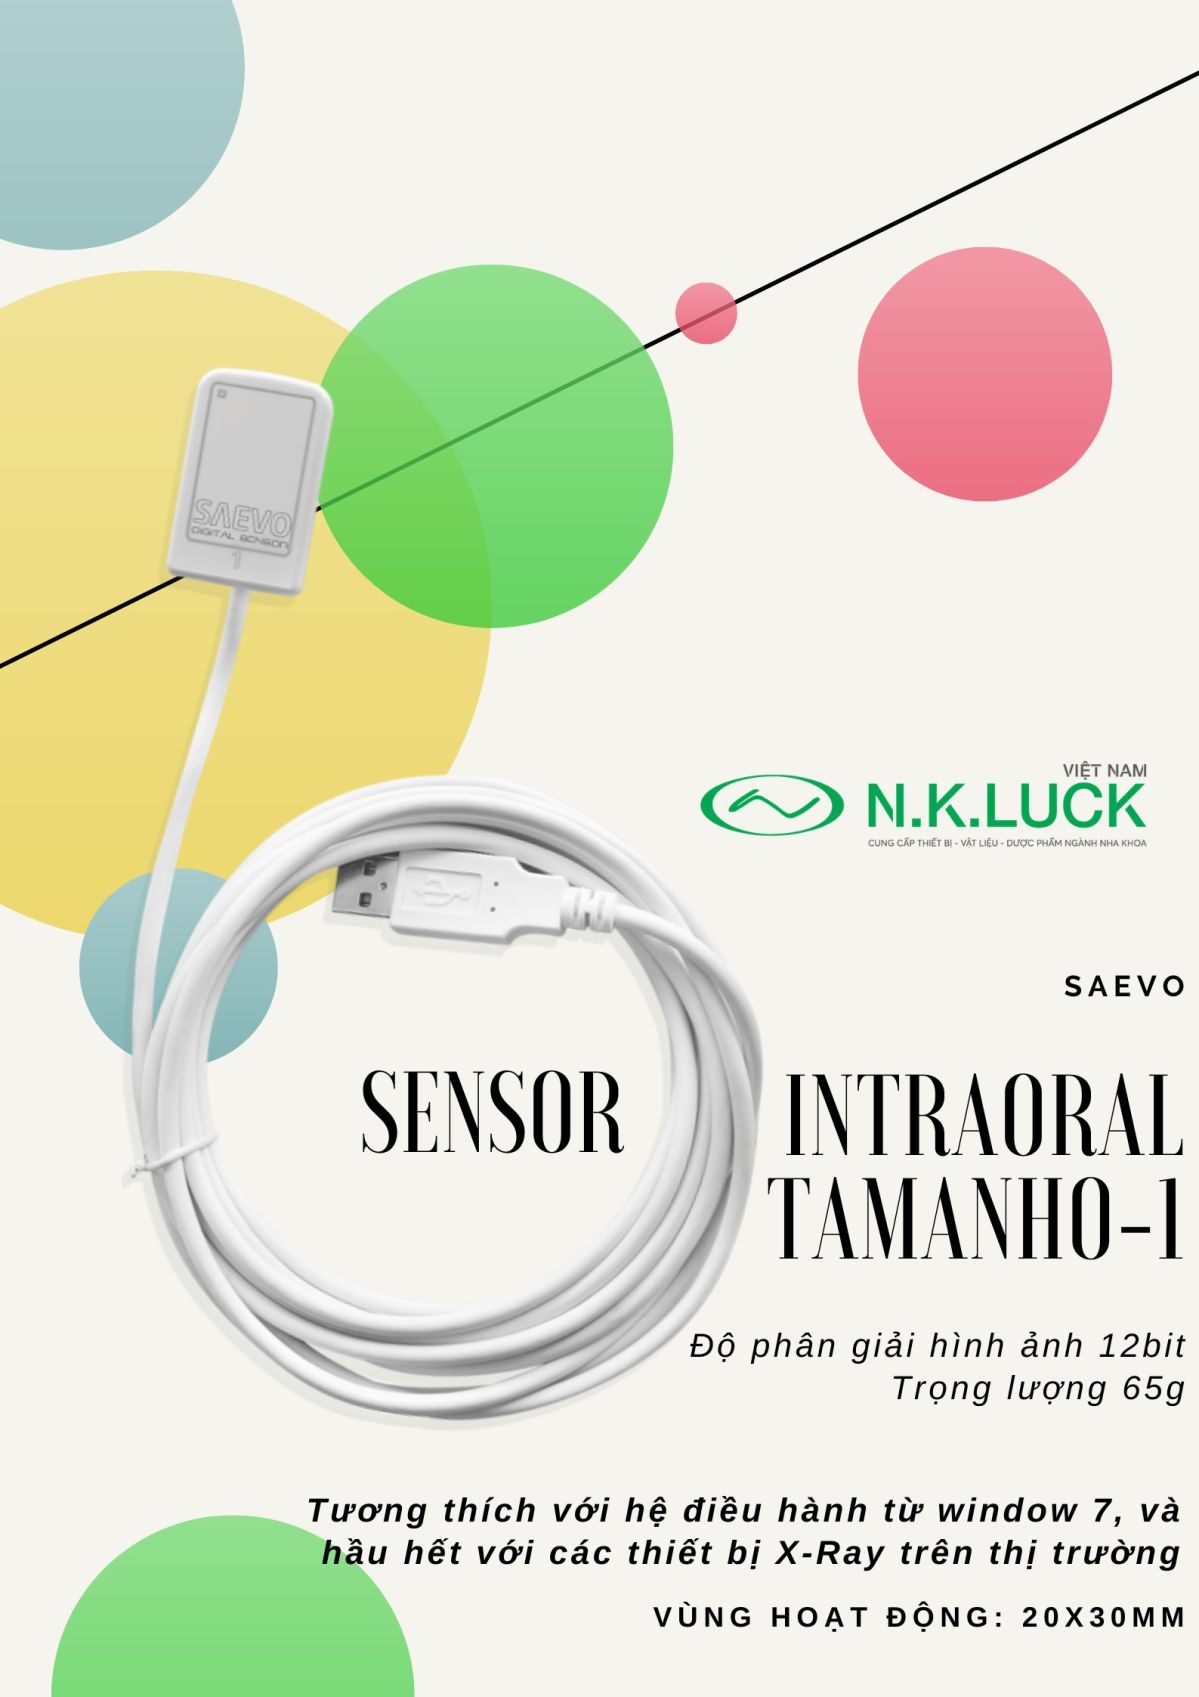 Sensor Intraoral Intraoral - Tamanho 1 thiết bị chẩn đoán kỹ thuật số